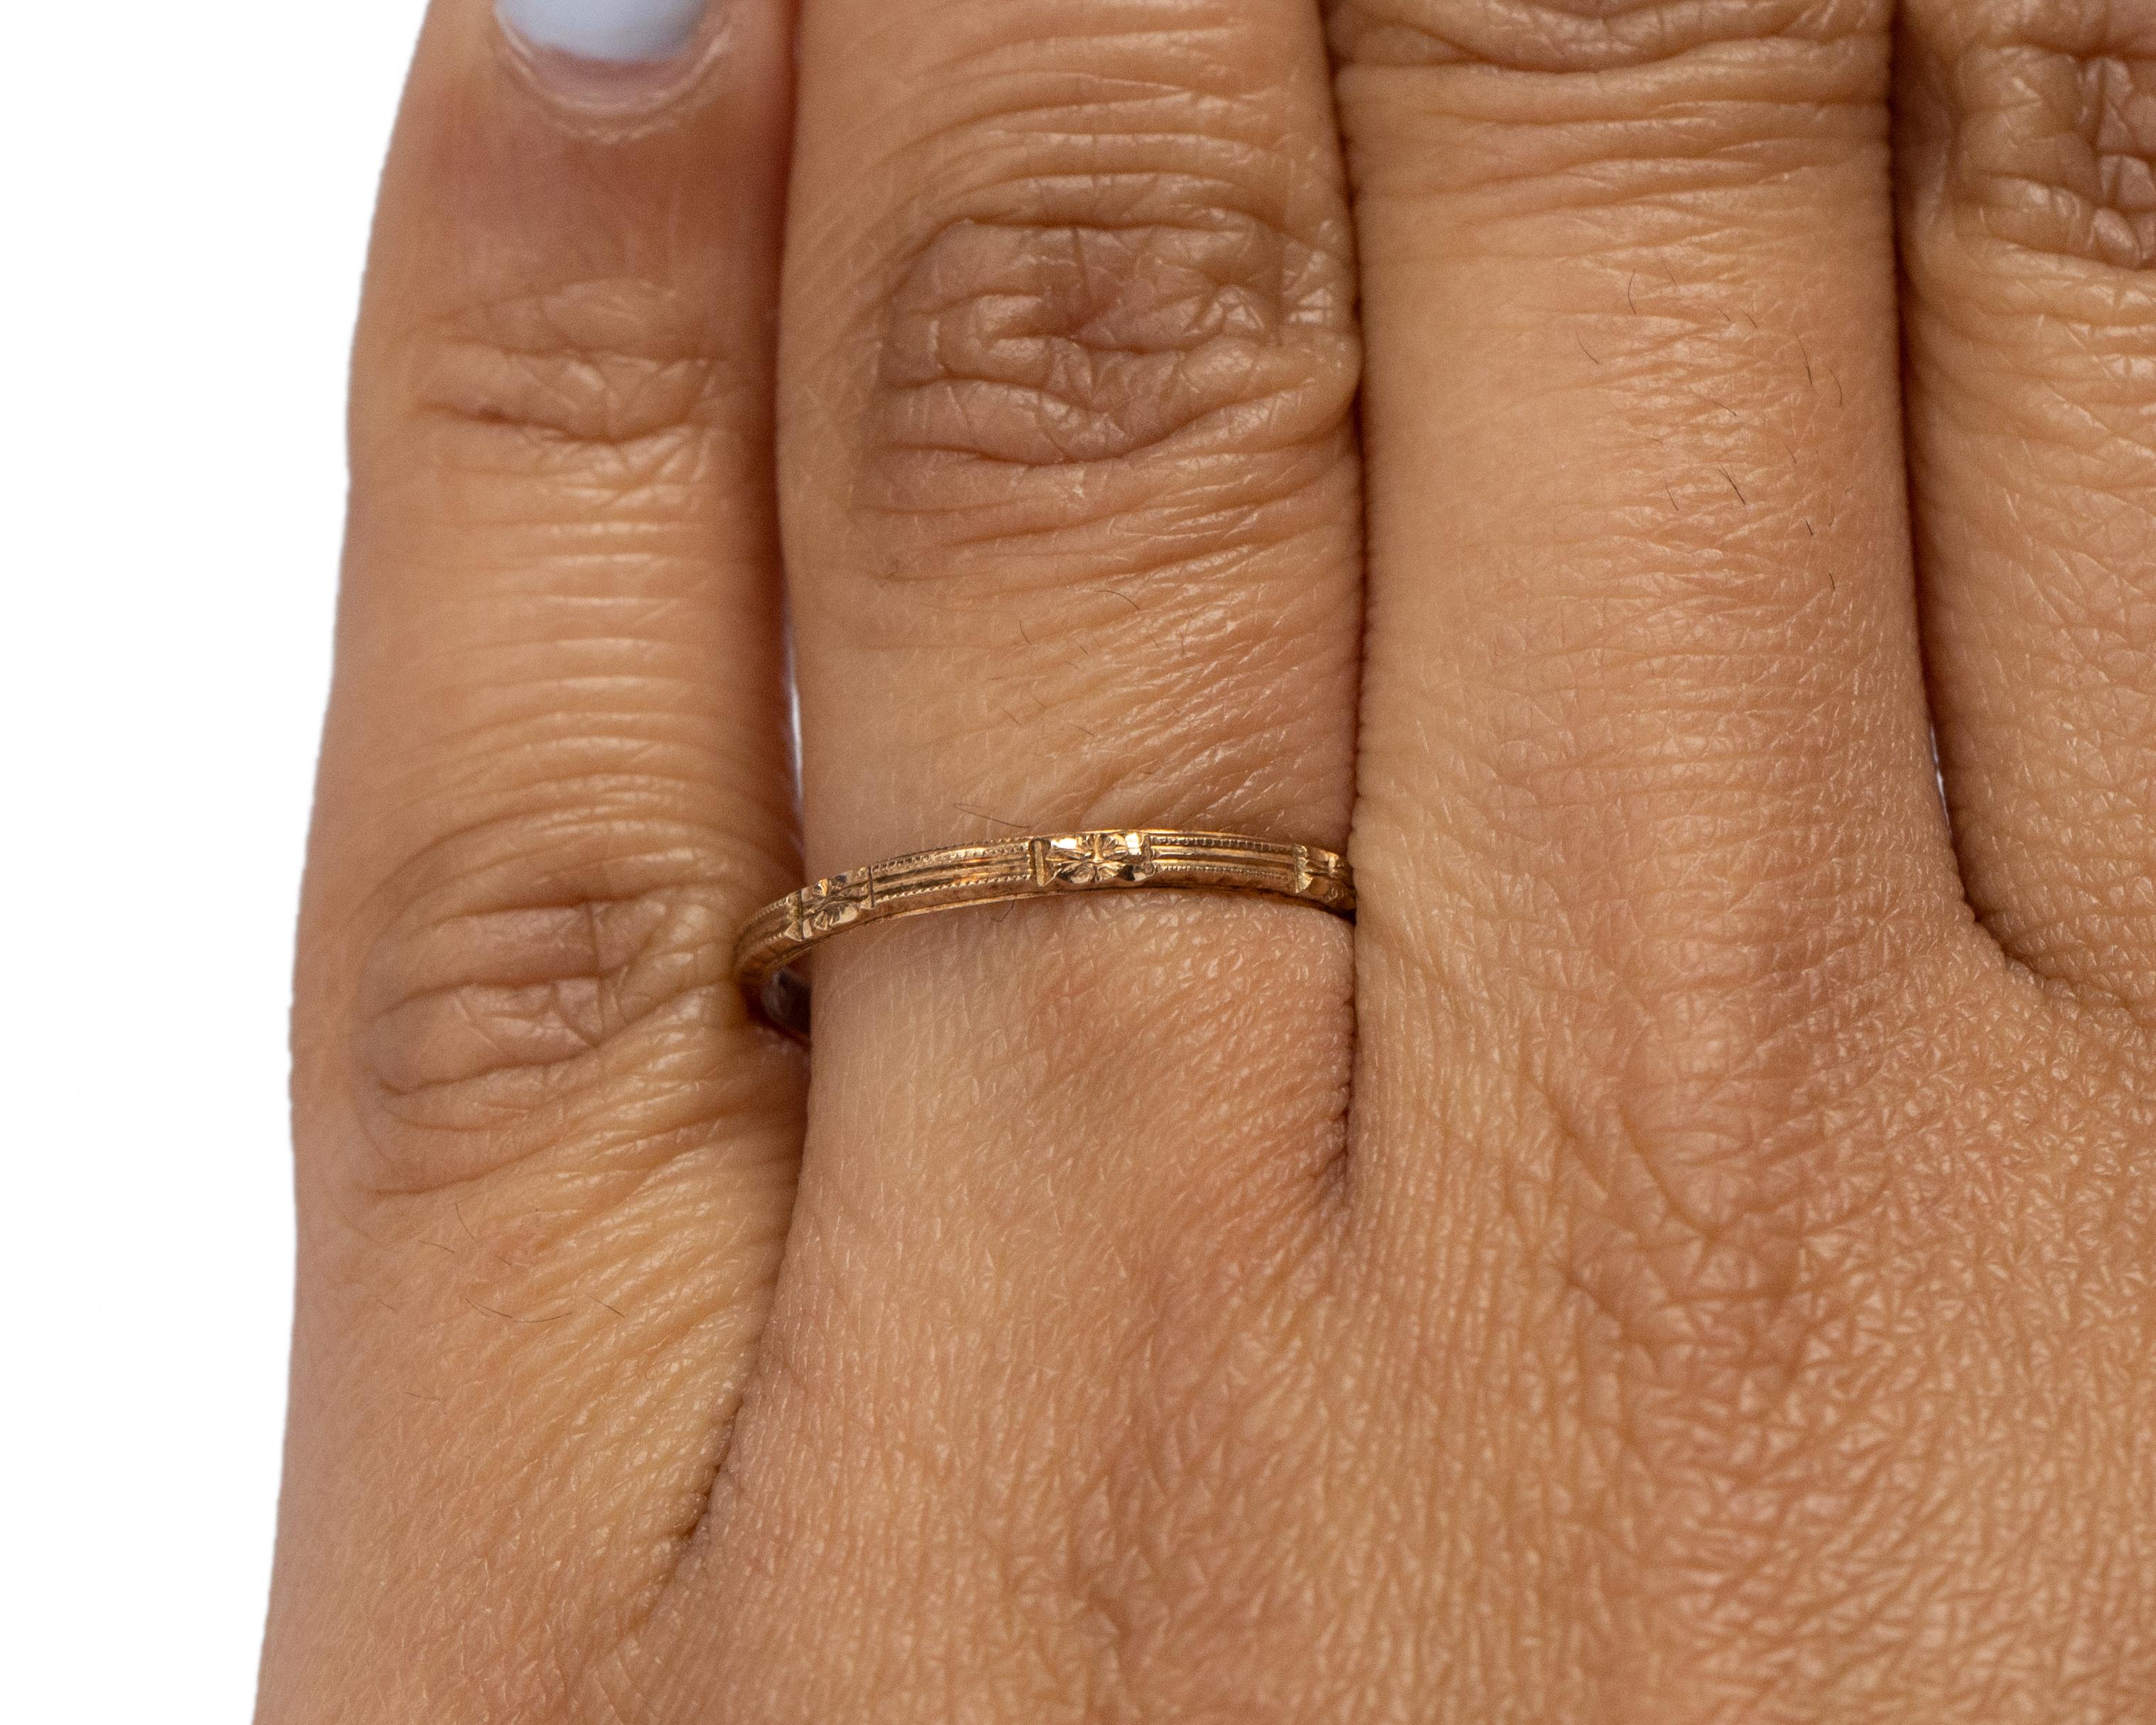 Détails de l'article : 
Taille de l'anneau : 7
Type de métal : or jaune 10 carats [poinçonné et testé]
Poids : 1,0 gramme

Mesure du doigt au sommet de la pierre : 1.5 mm
Condition : Excellent